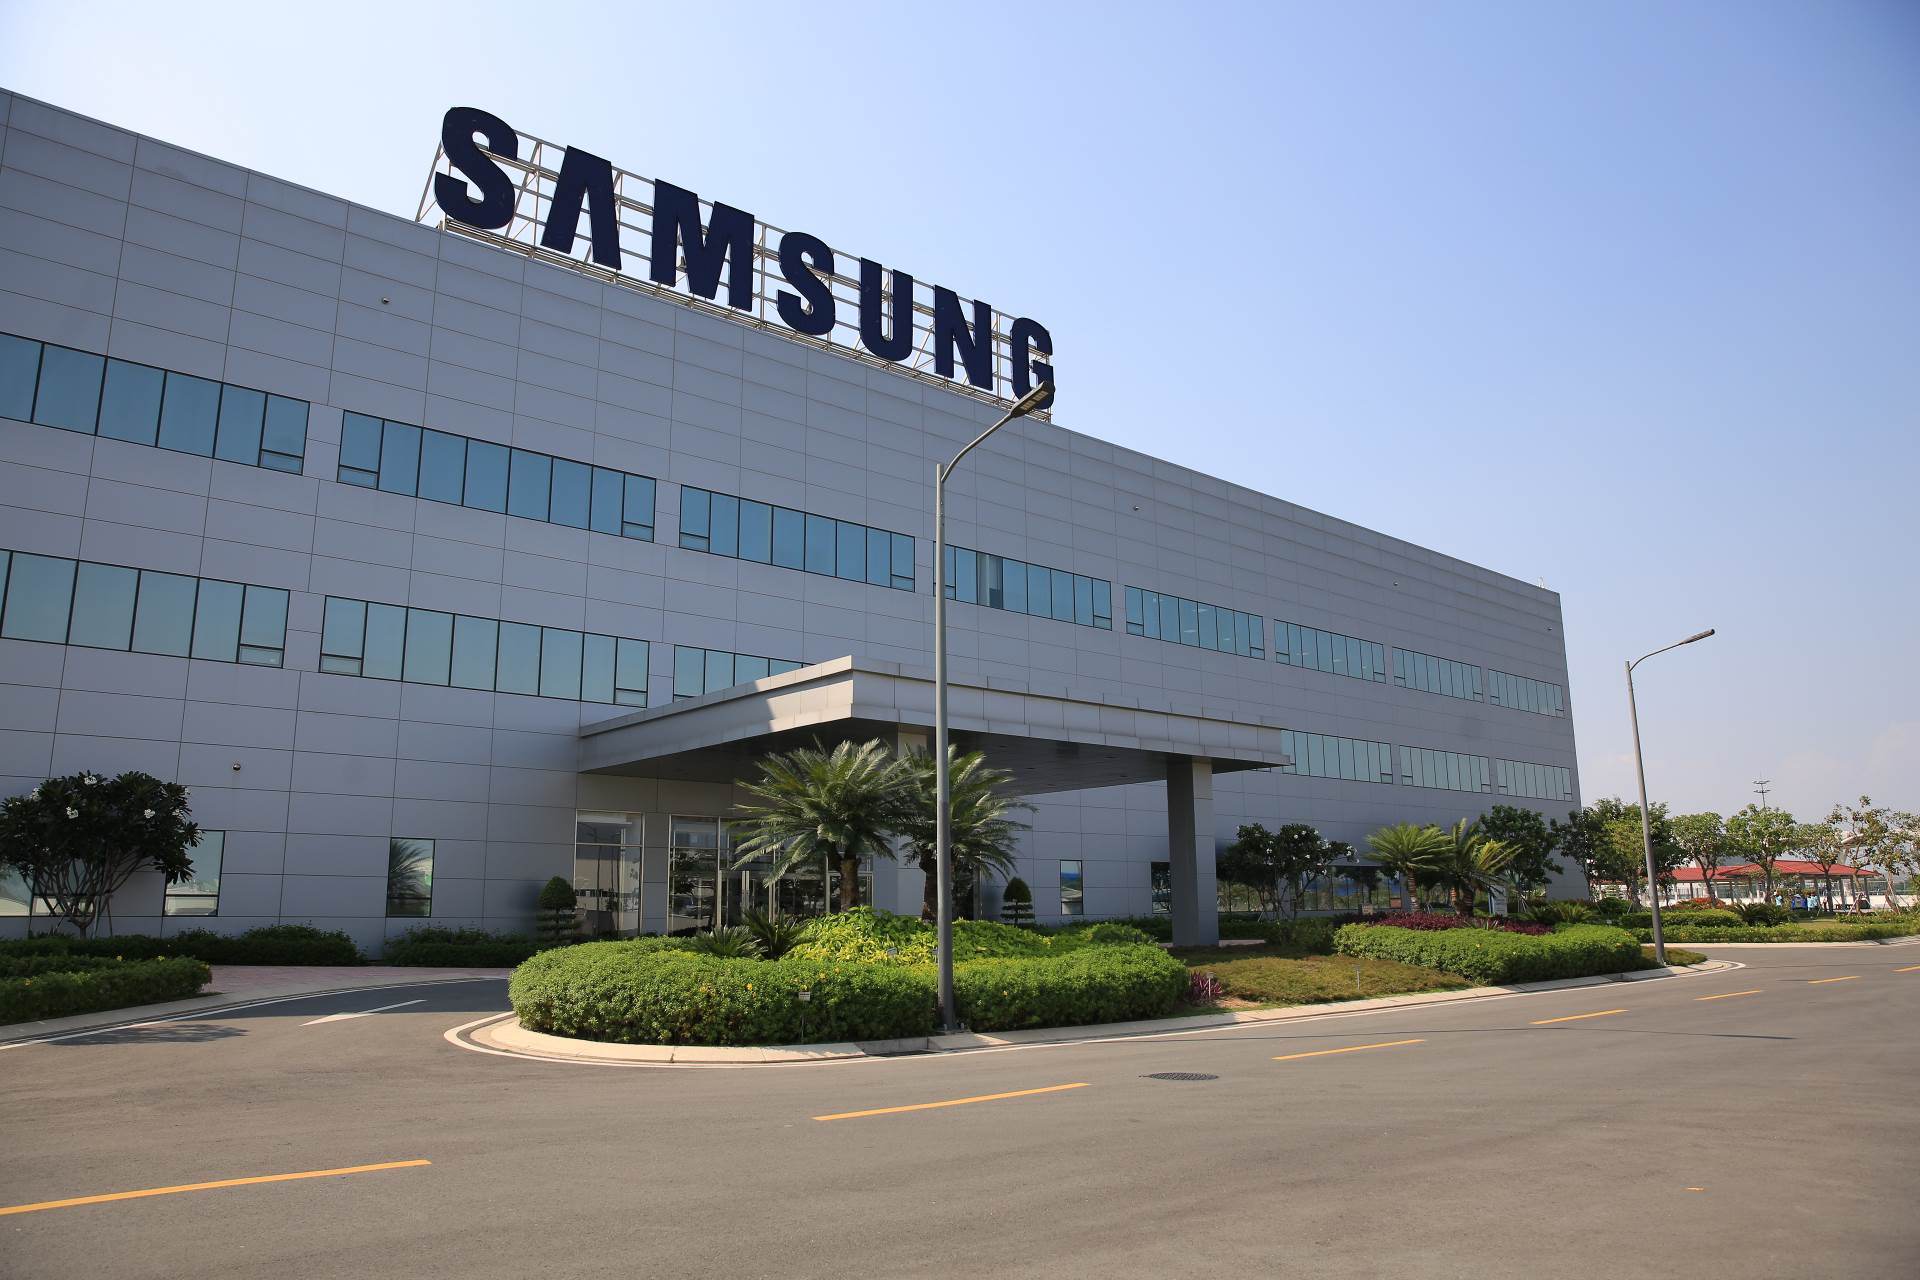 Nhà máy Samsung tại Việt Nam